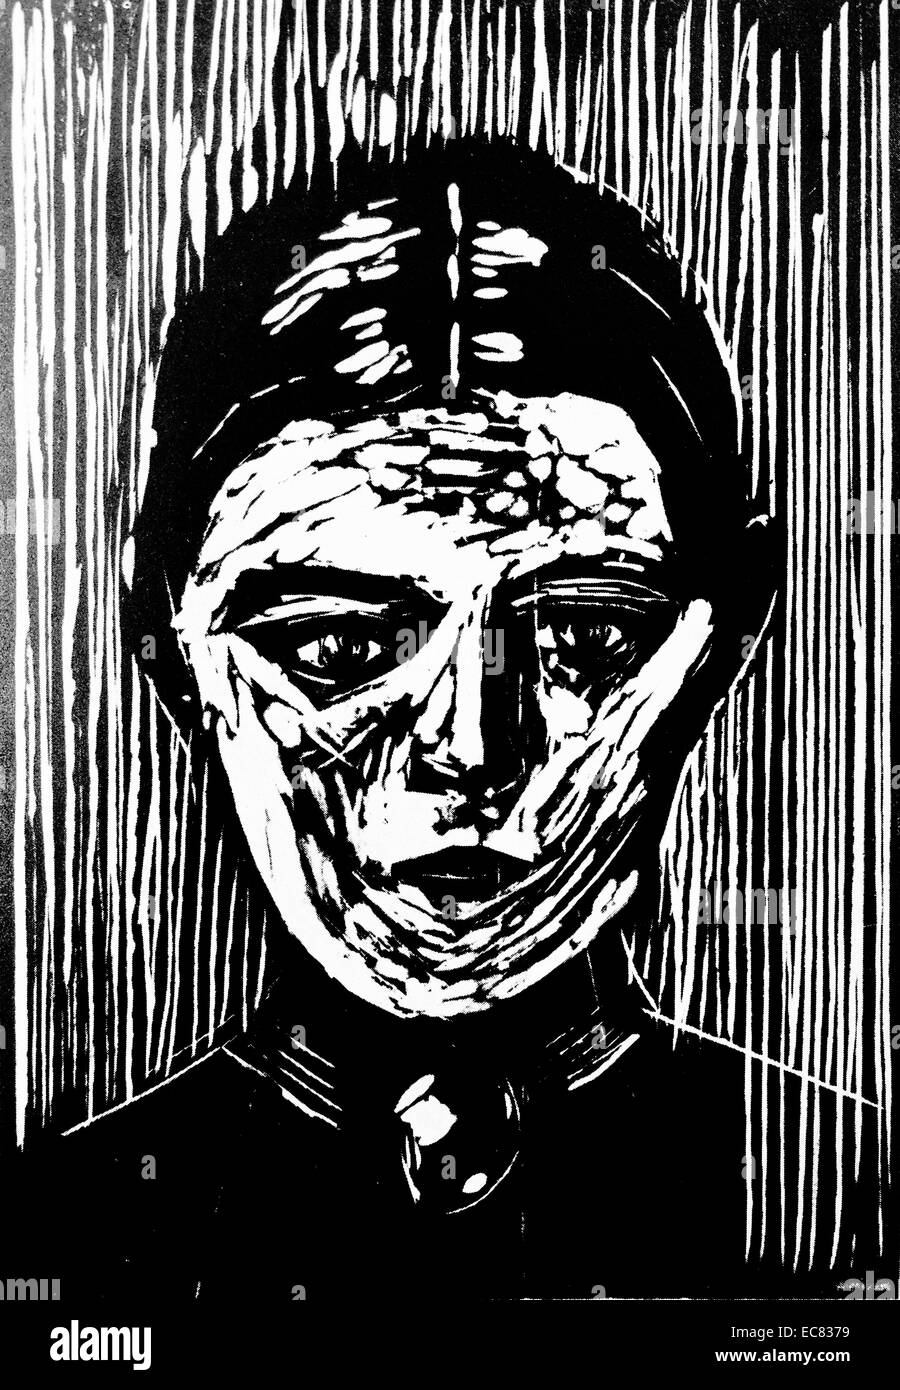 Le droit du travail Les jeunes de l'Inger Munch par l'artiste norvégien Edvard Munch (1863-1944). Cette œuvre a été réalisée en 1926. Banque D'Images